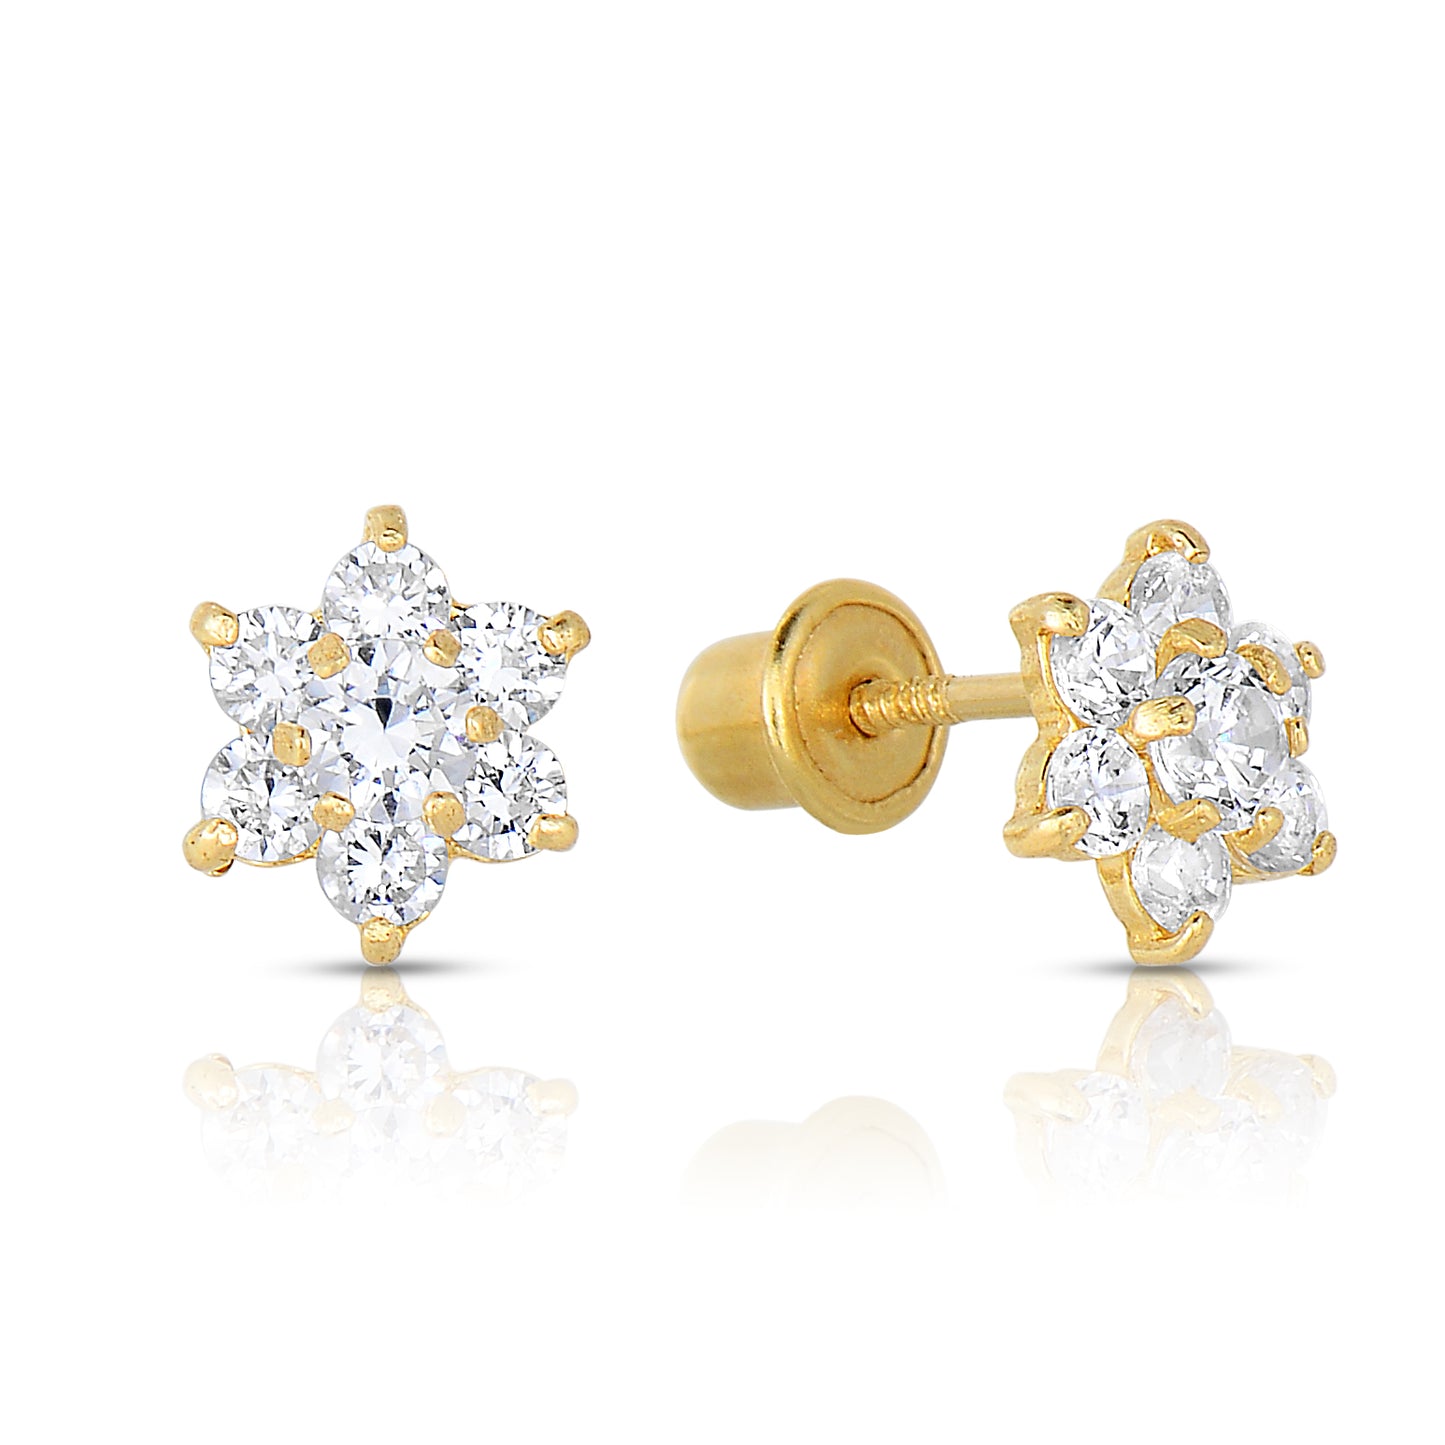 14K Yellow Gold Birthstone Halo Flower Stud Earrings